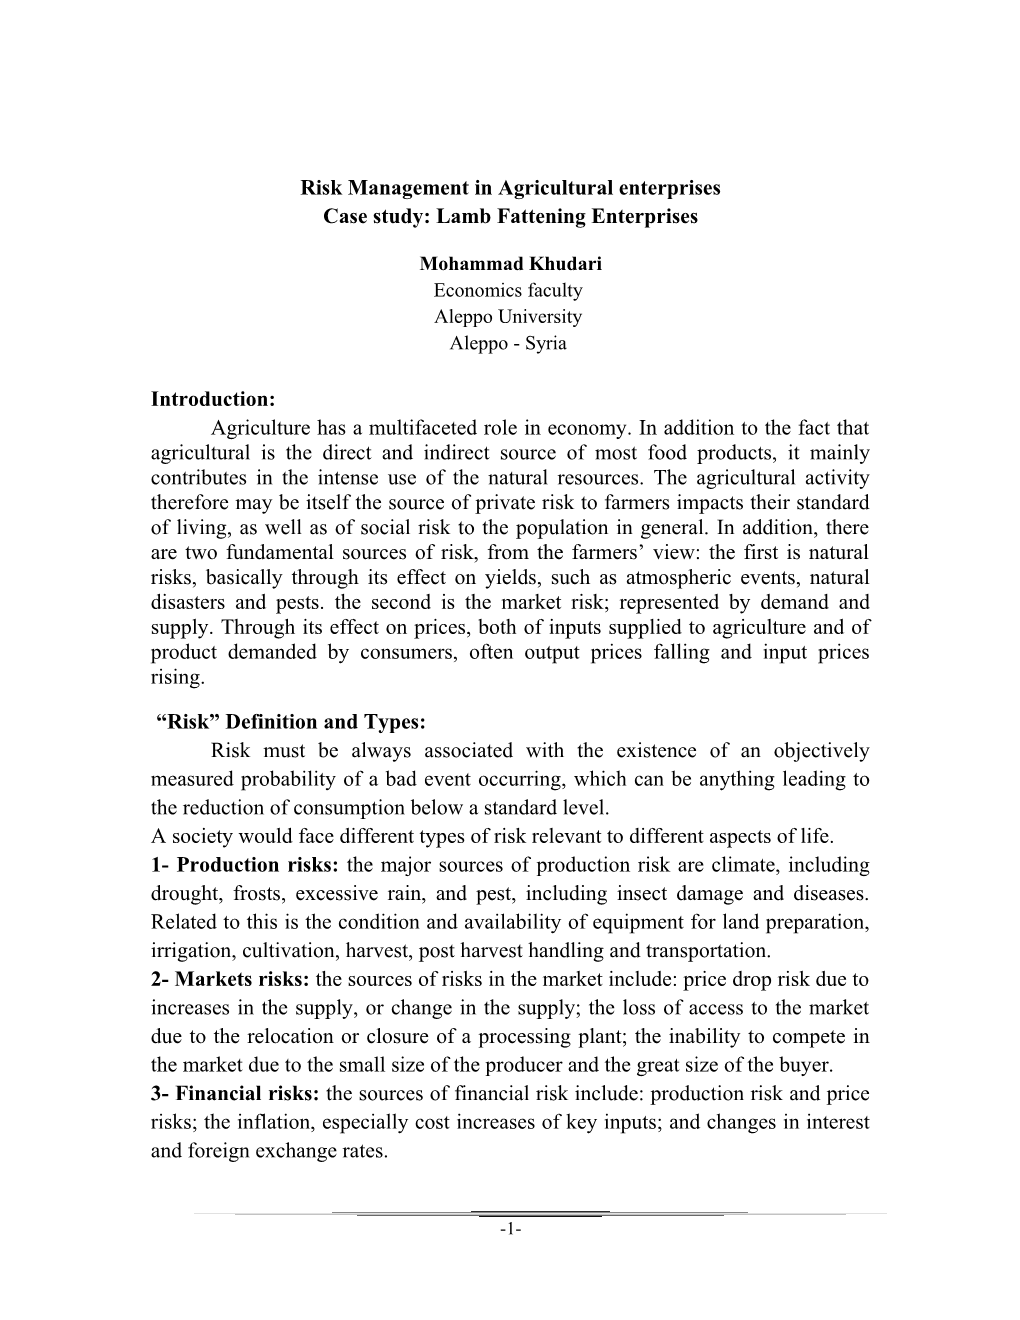 Risk Management in Agricultural Enterprises